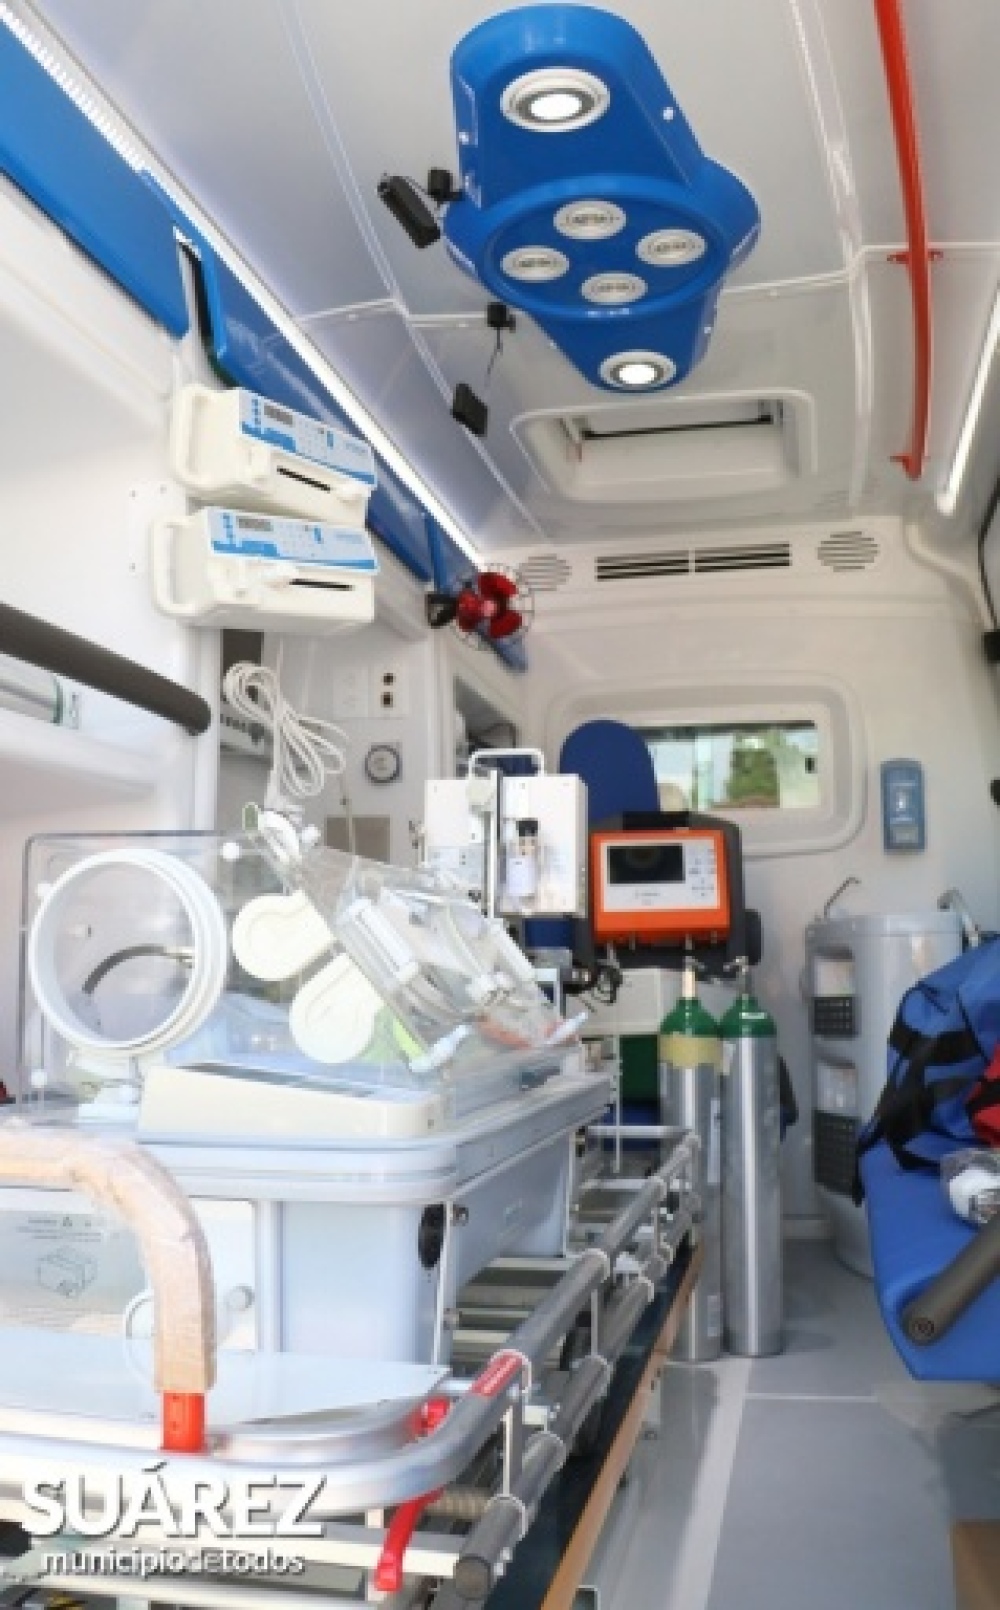 Coronel Suárez cuenta con una ambulancia de alta complejidad
